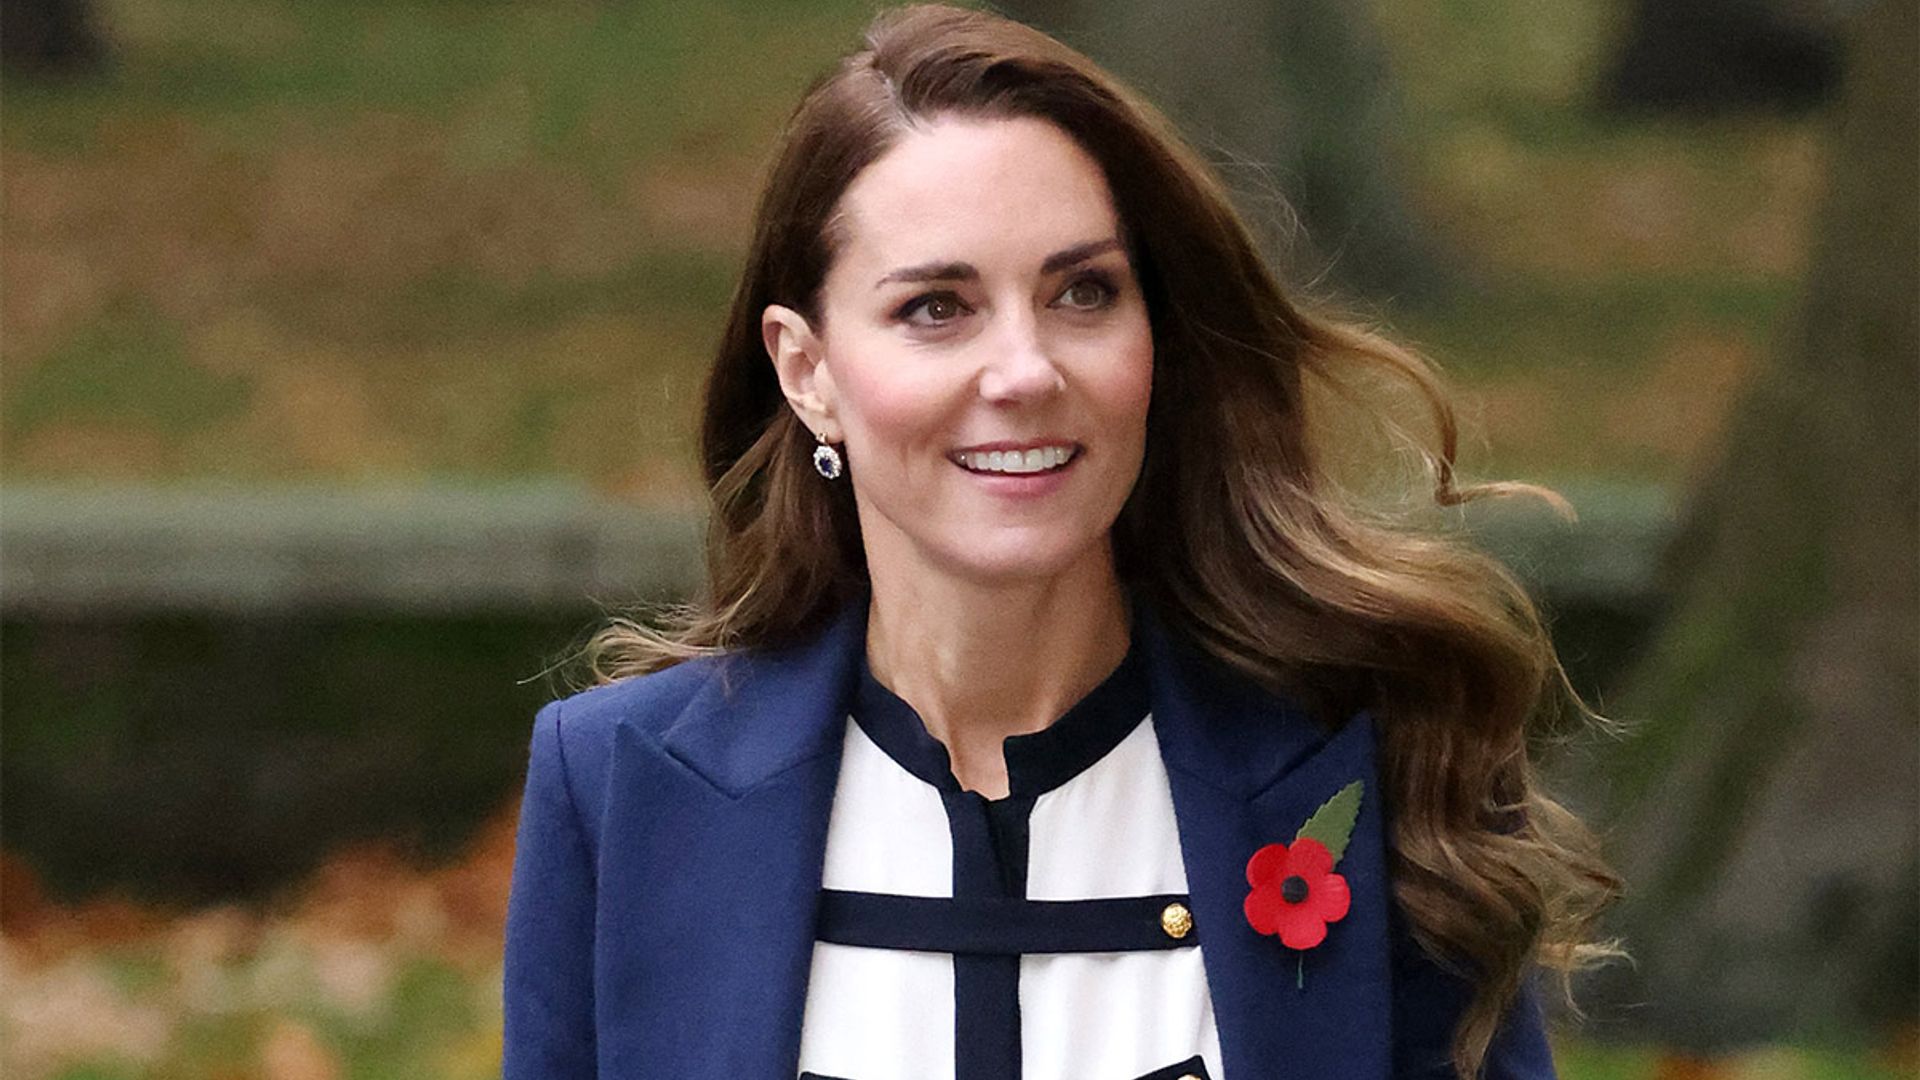 Kate Middleton rocks unique Alexander McQueen sailor outfit at London museum